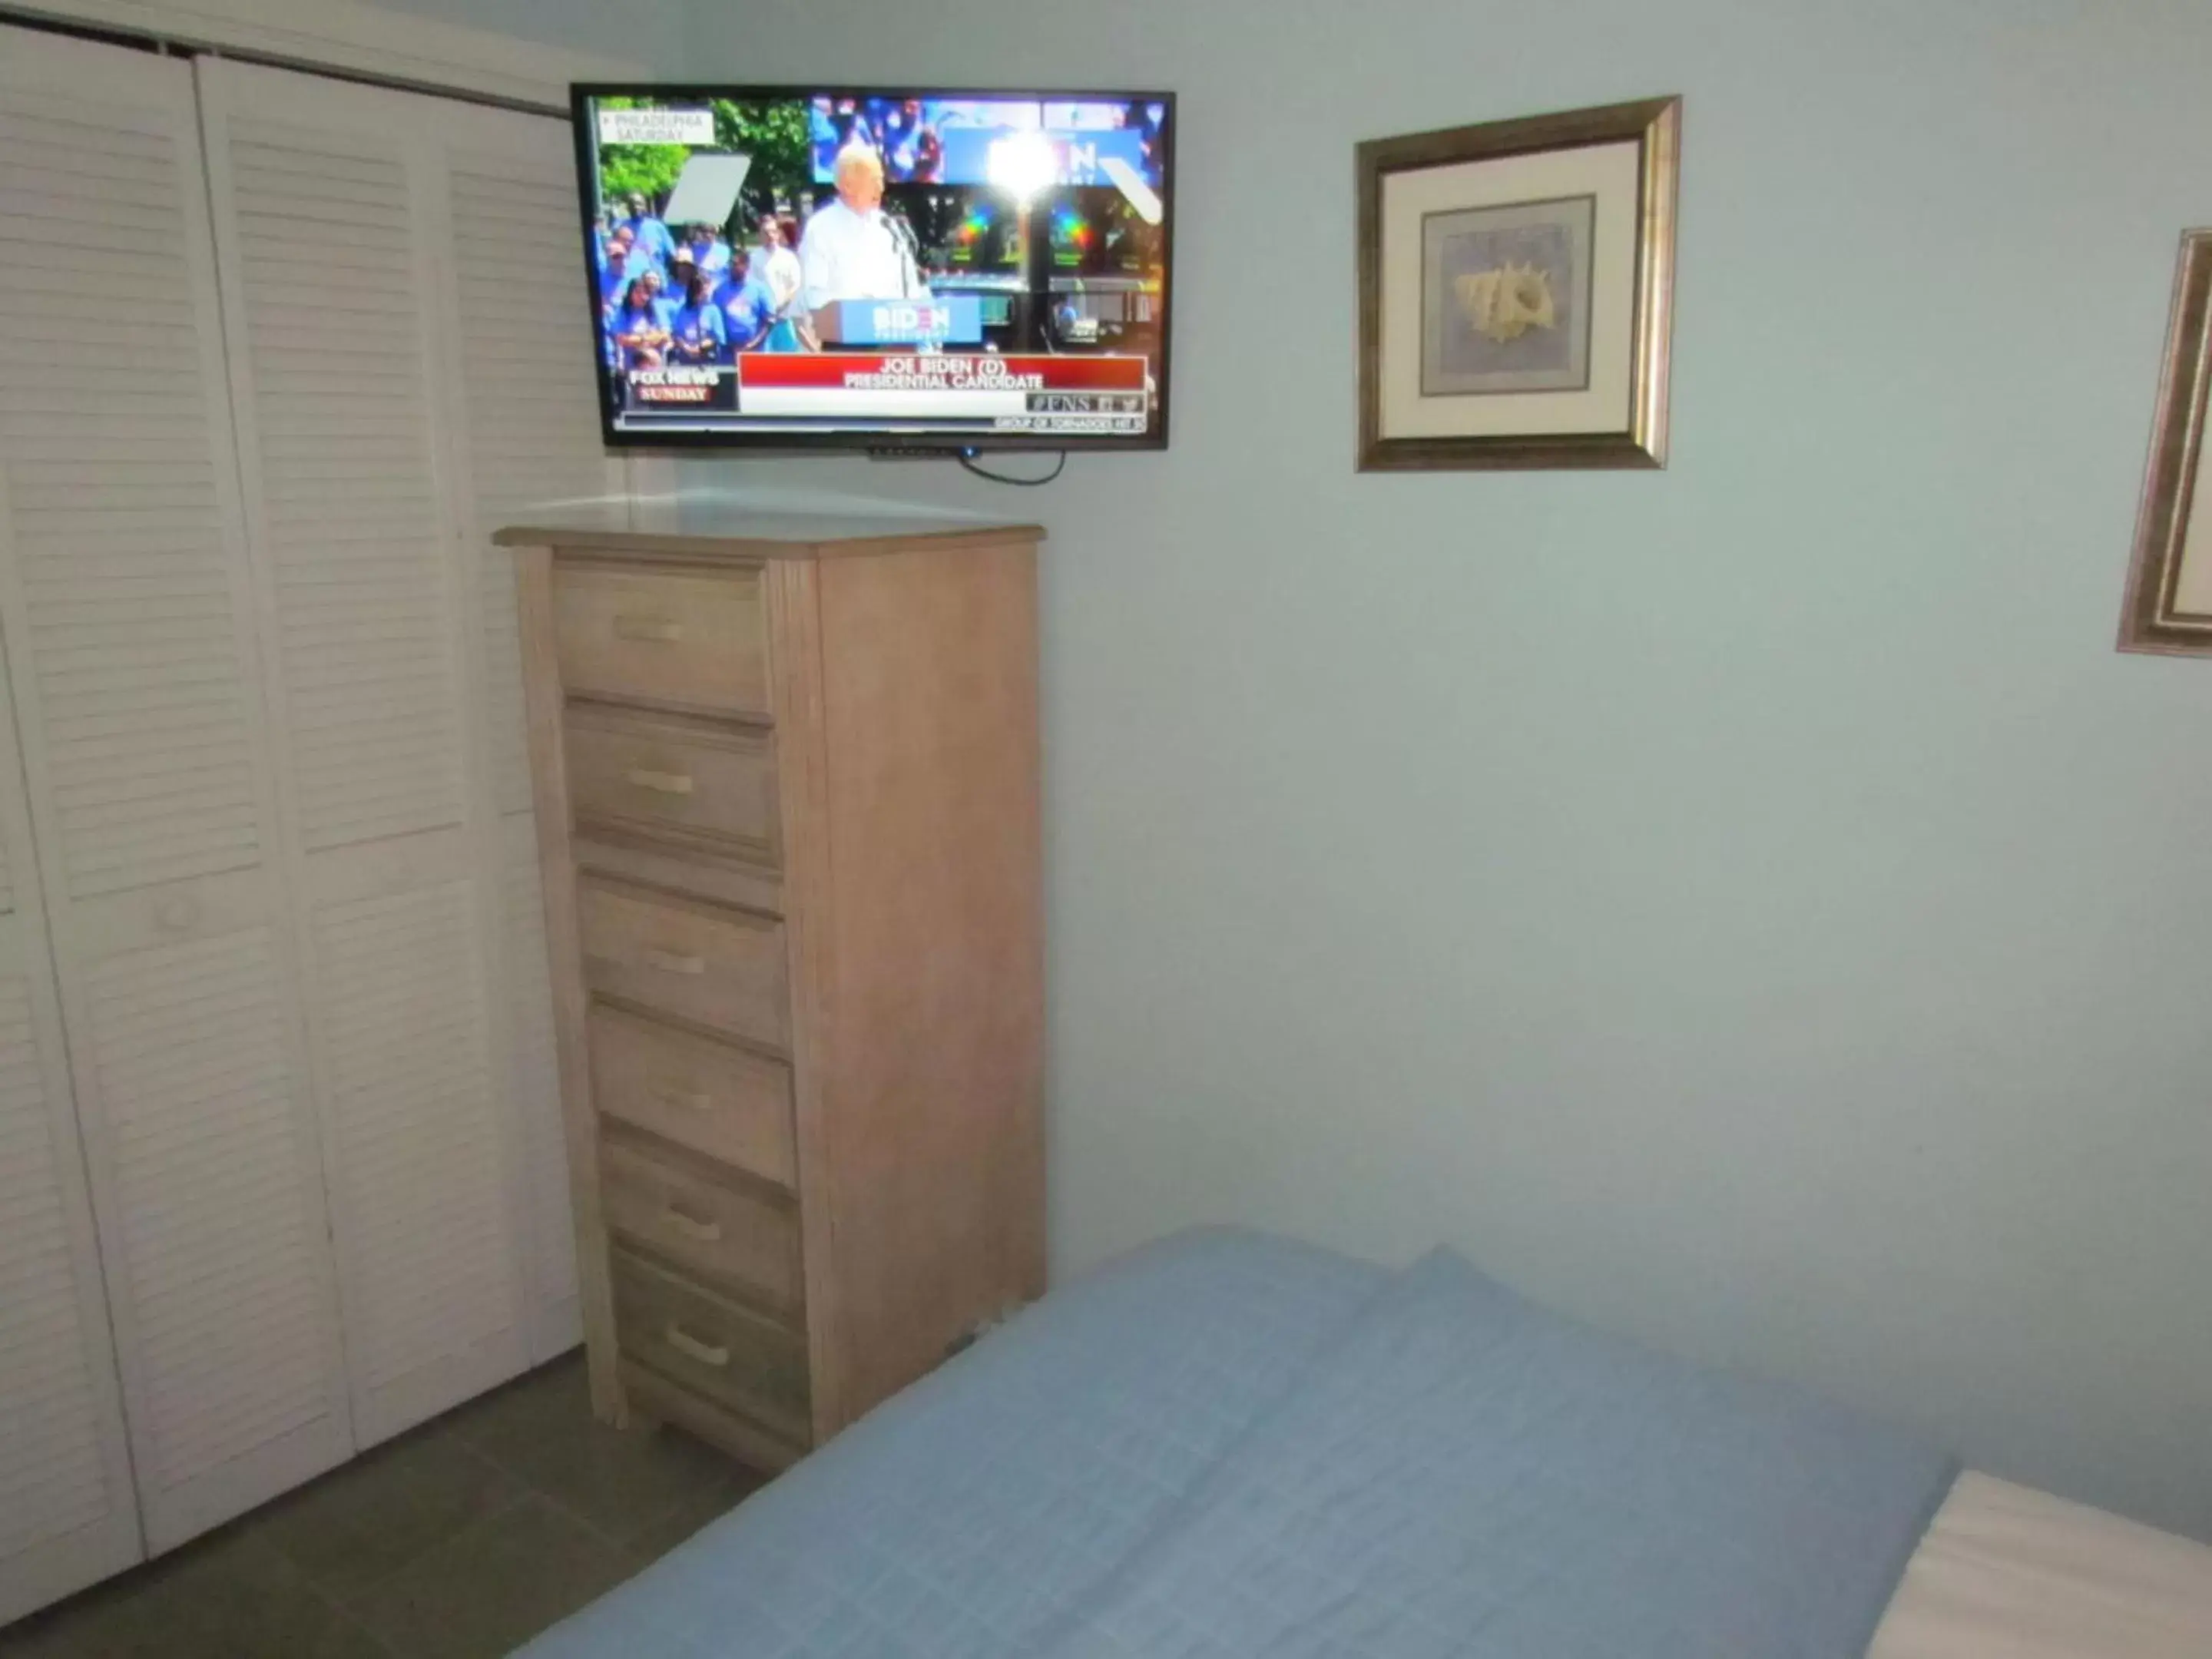 Bedroom, TV/Entertainment Center in Myrtle Beach Resort